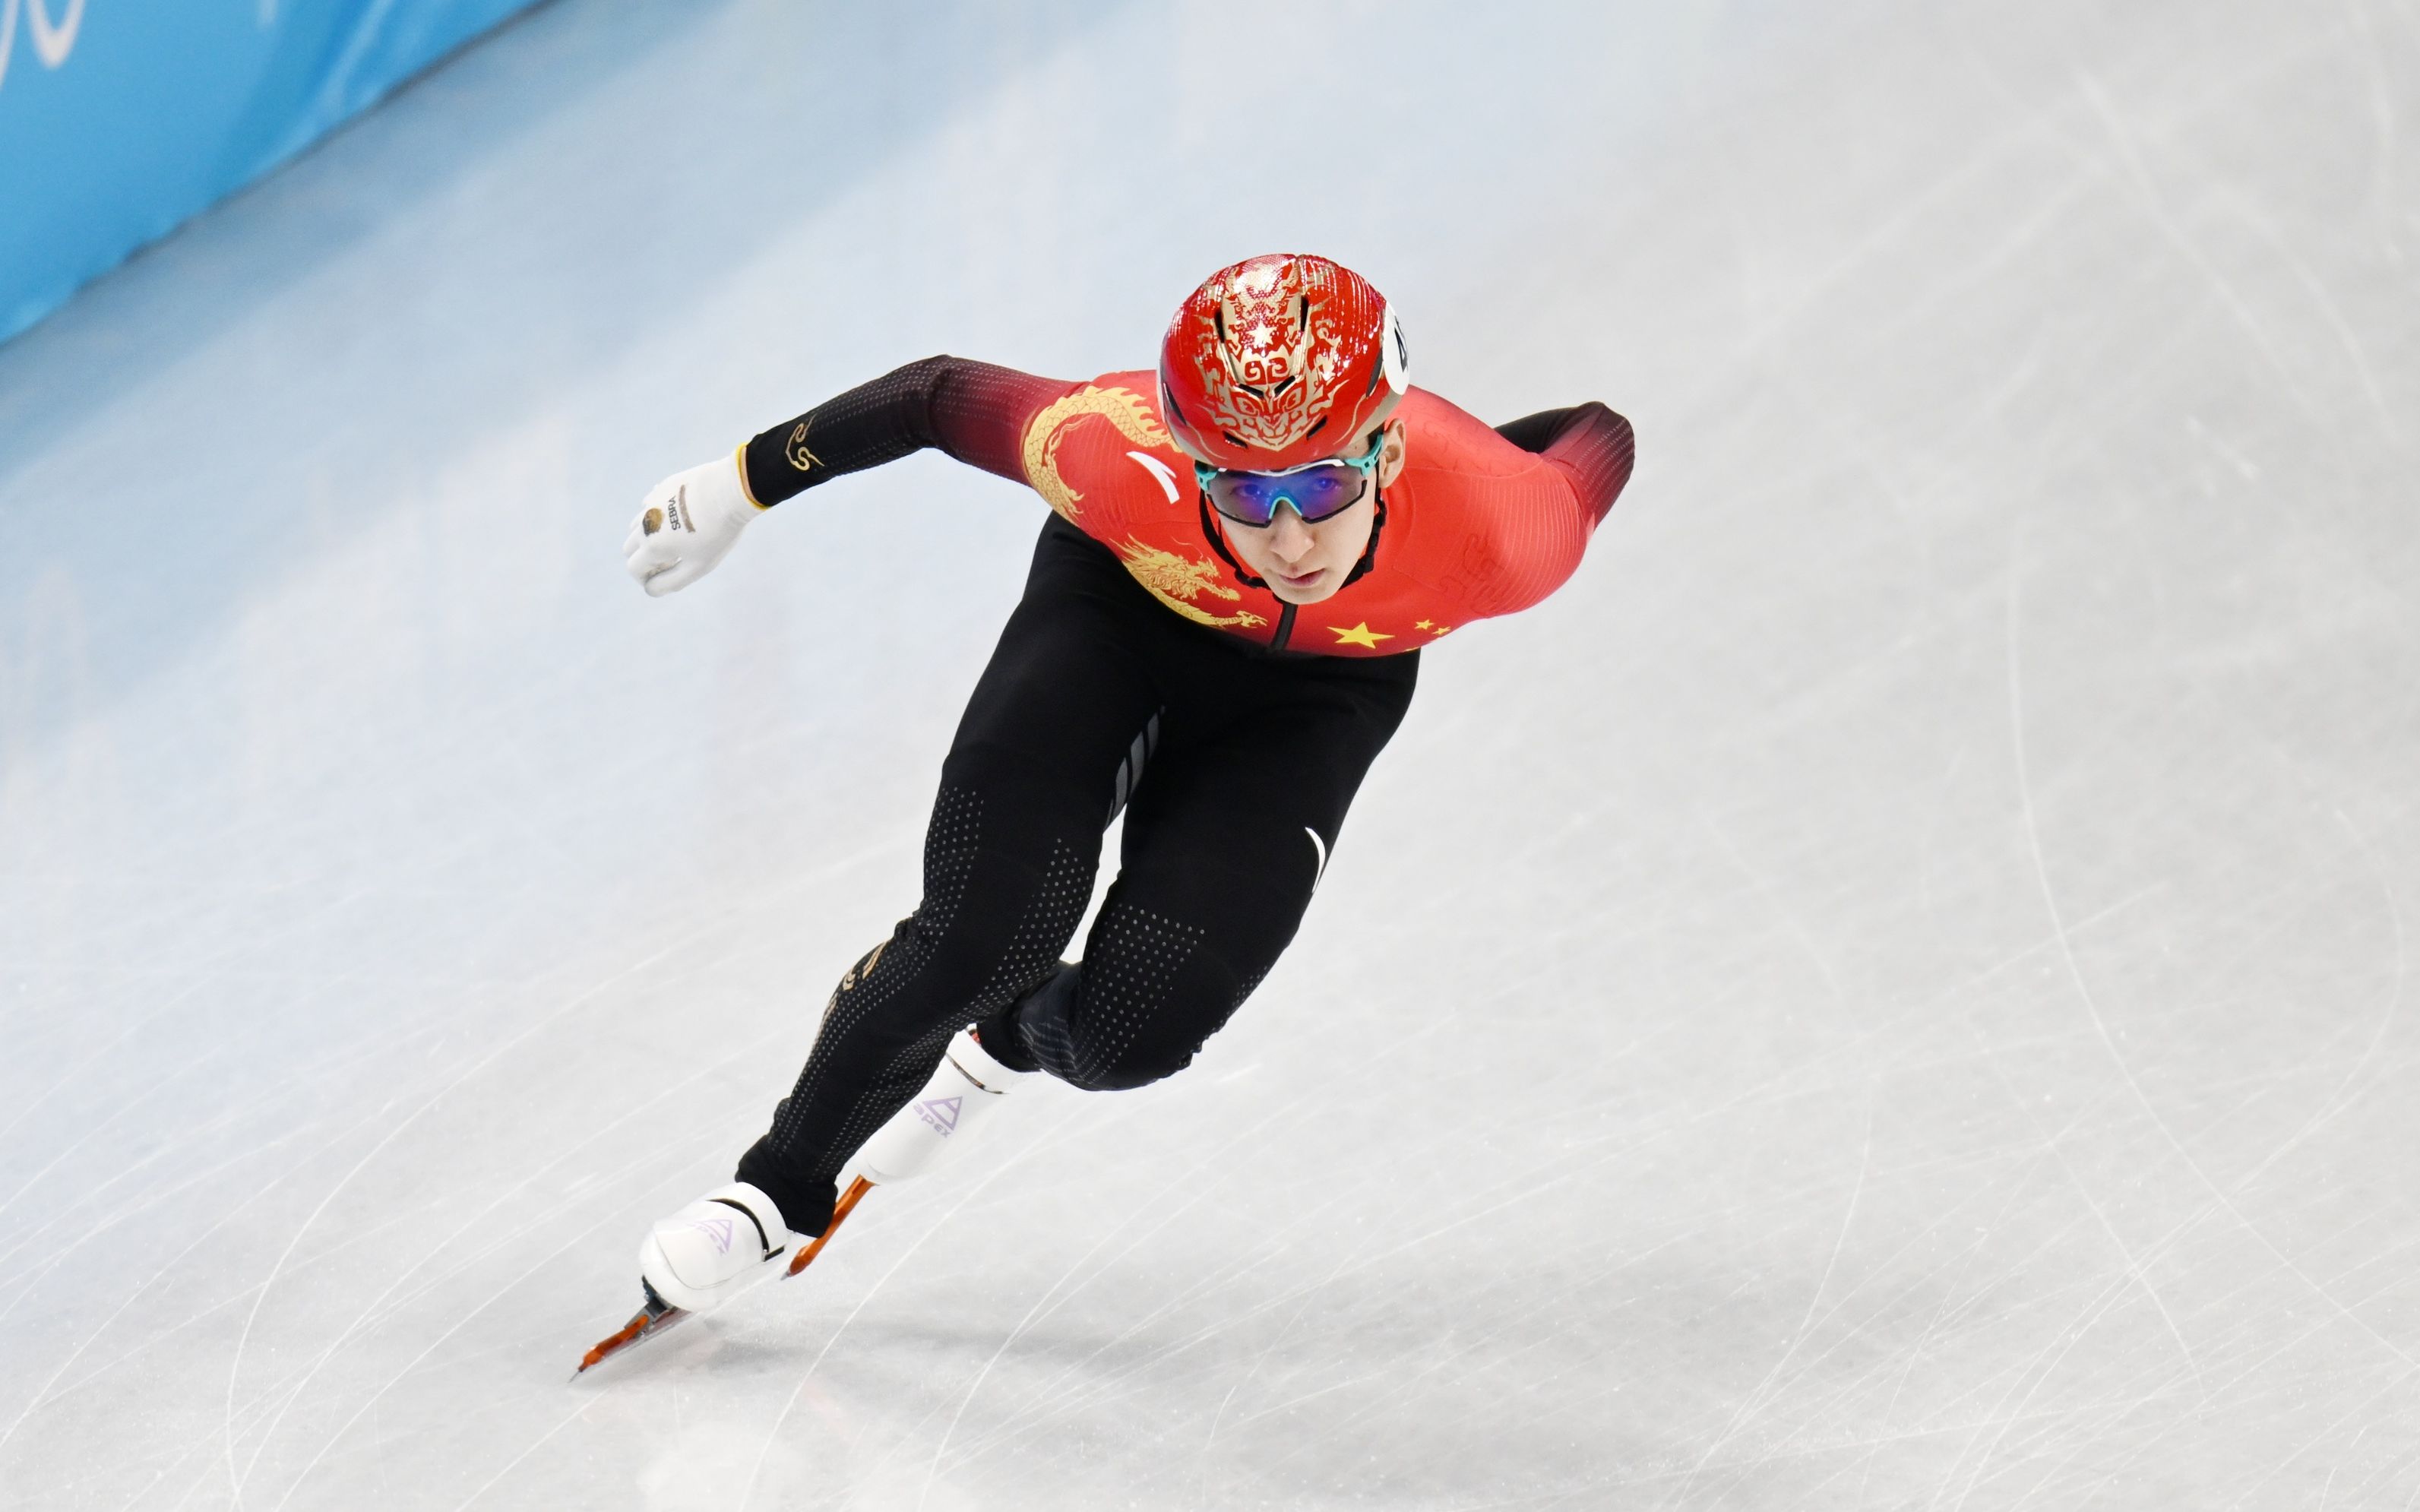 中国短道速滑冠军图片